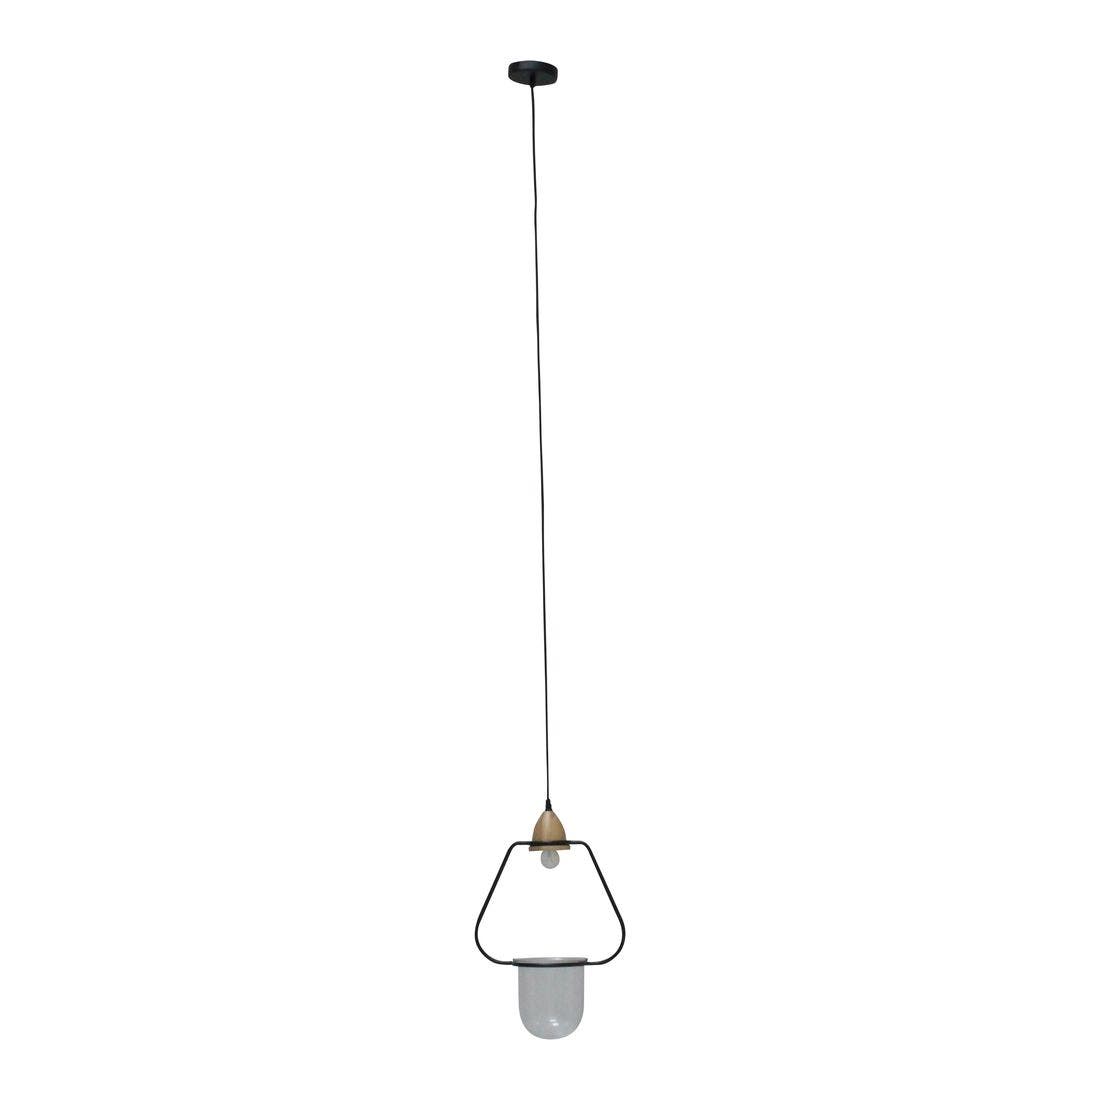 โคมไฟ โคมไฟแขวน รุ่น Ecolism สีสีดำ-SB Design Square